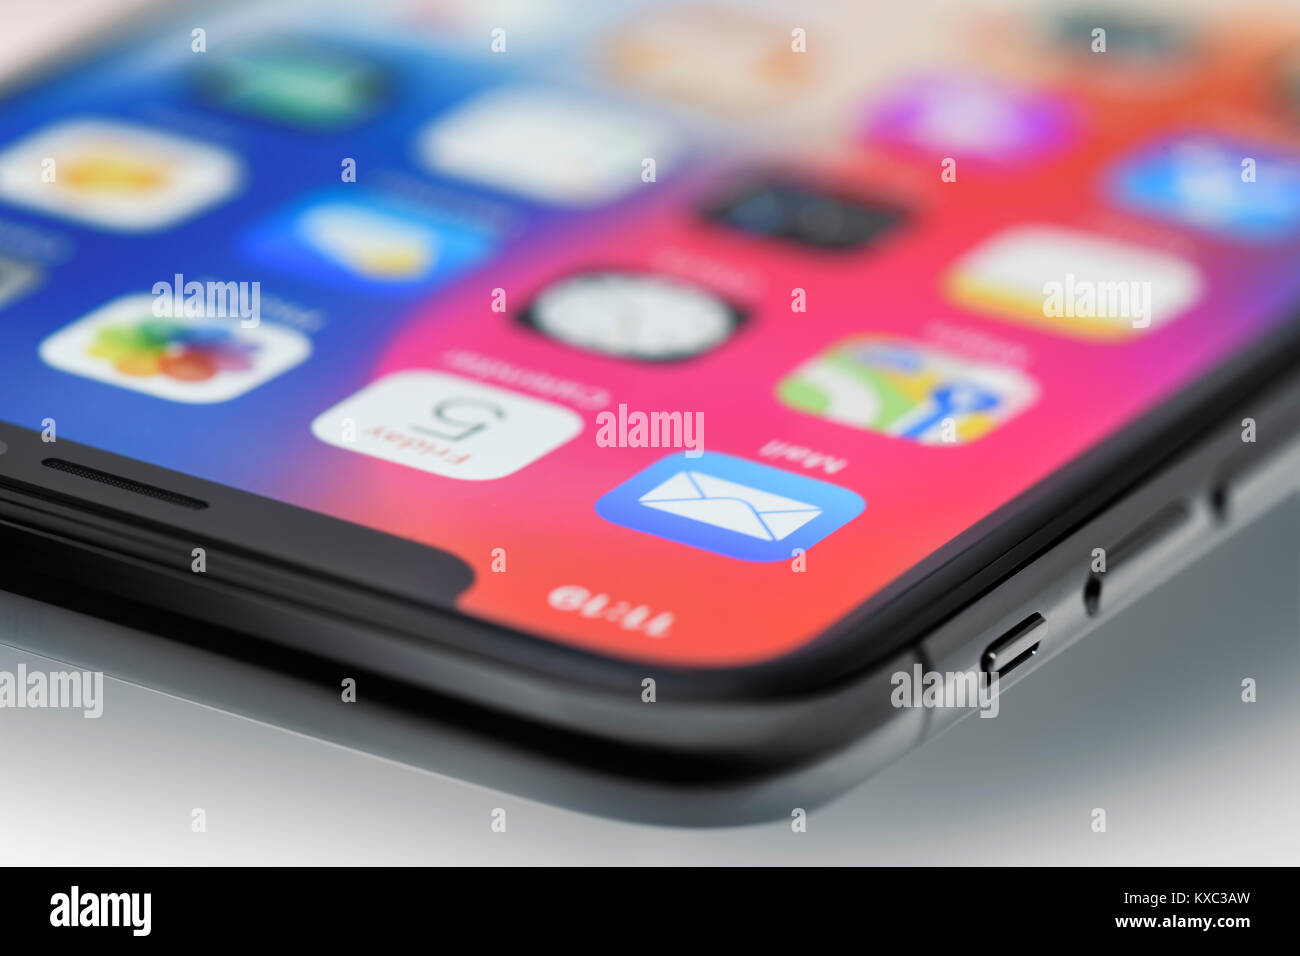 Nahaufnahme des Apple iPhone X-Smartphone Ecke mit einem farbenfrohen Display konzentrierte sich auf die Mail App Stockfoto